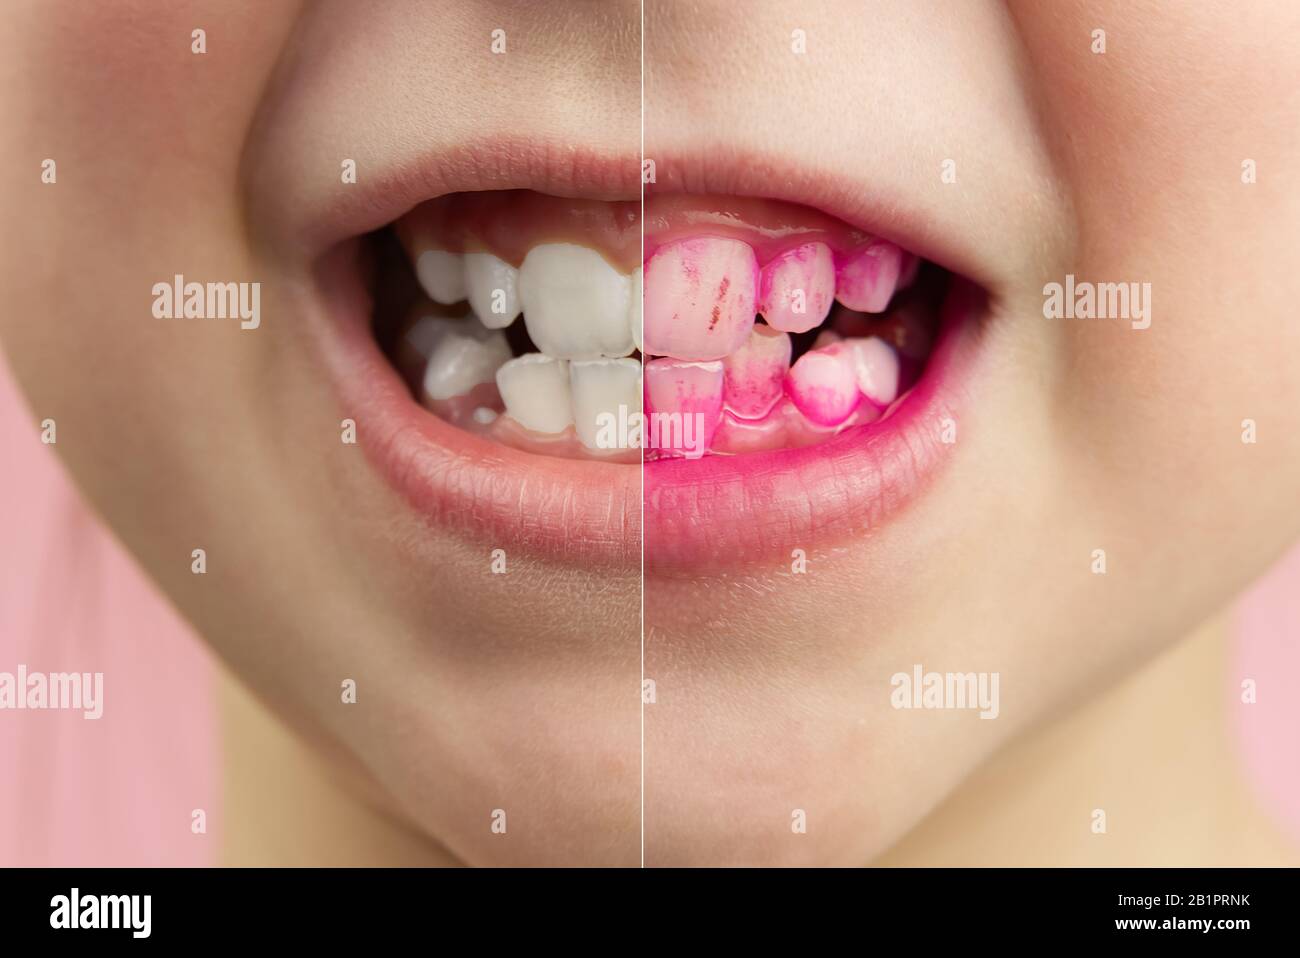 Plaque révélant les comprimés au travail. Avant et après - effet. Gros plan photo de jeune fille dent. Concept de pilule dentaire Banque D'Images